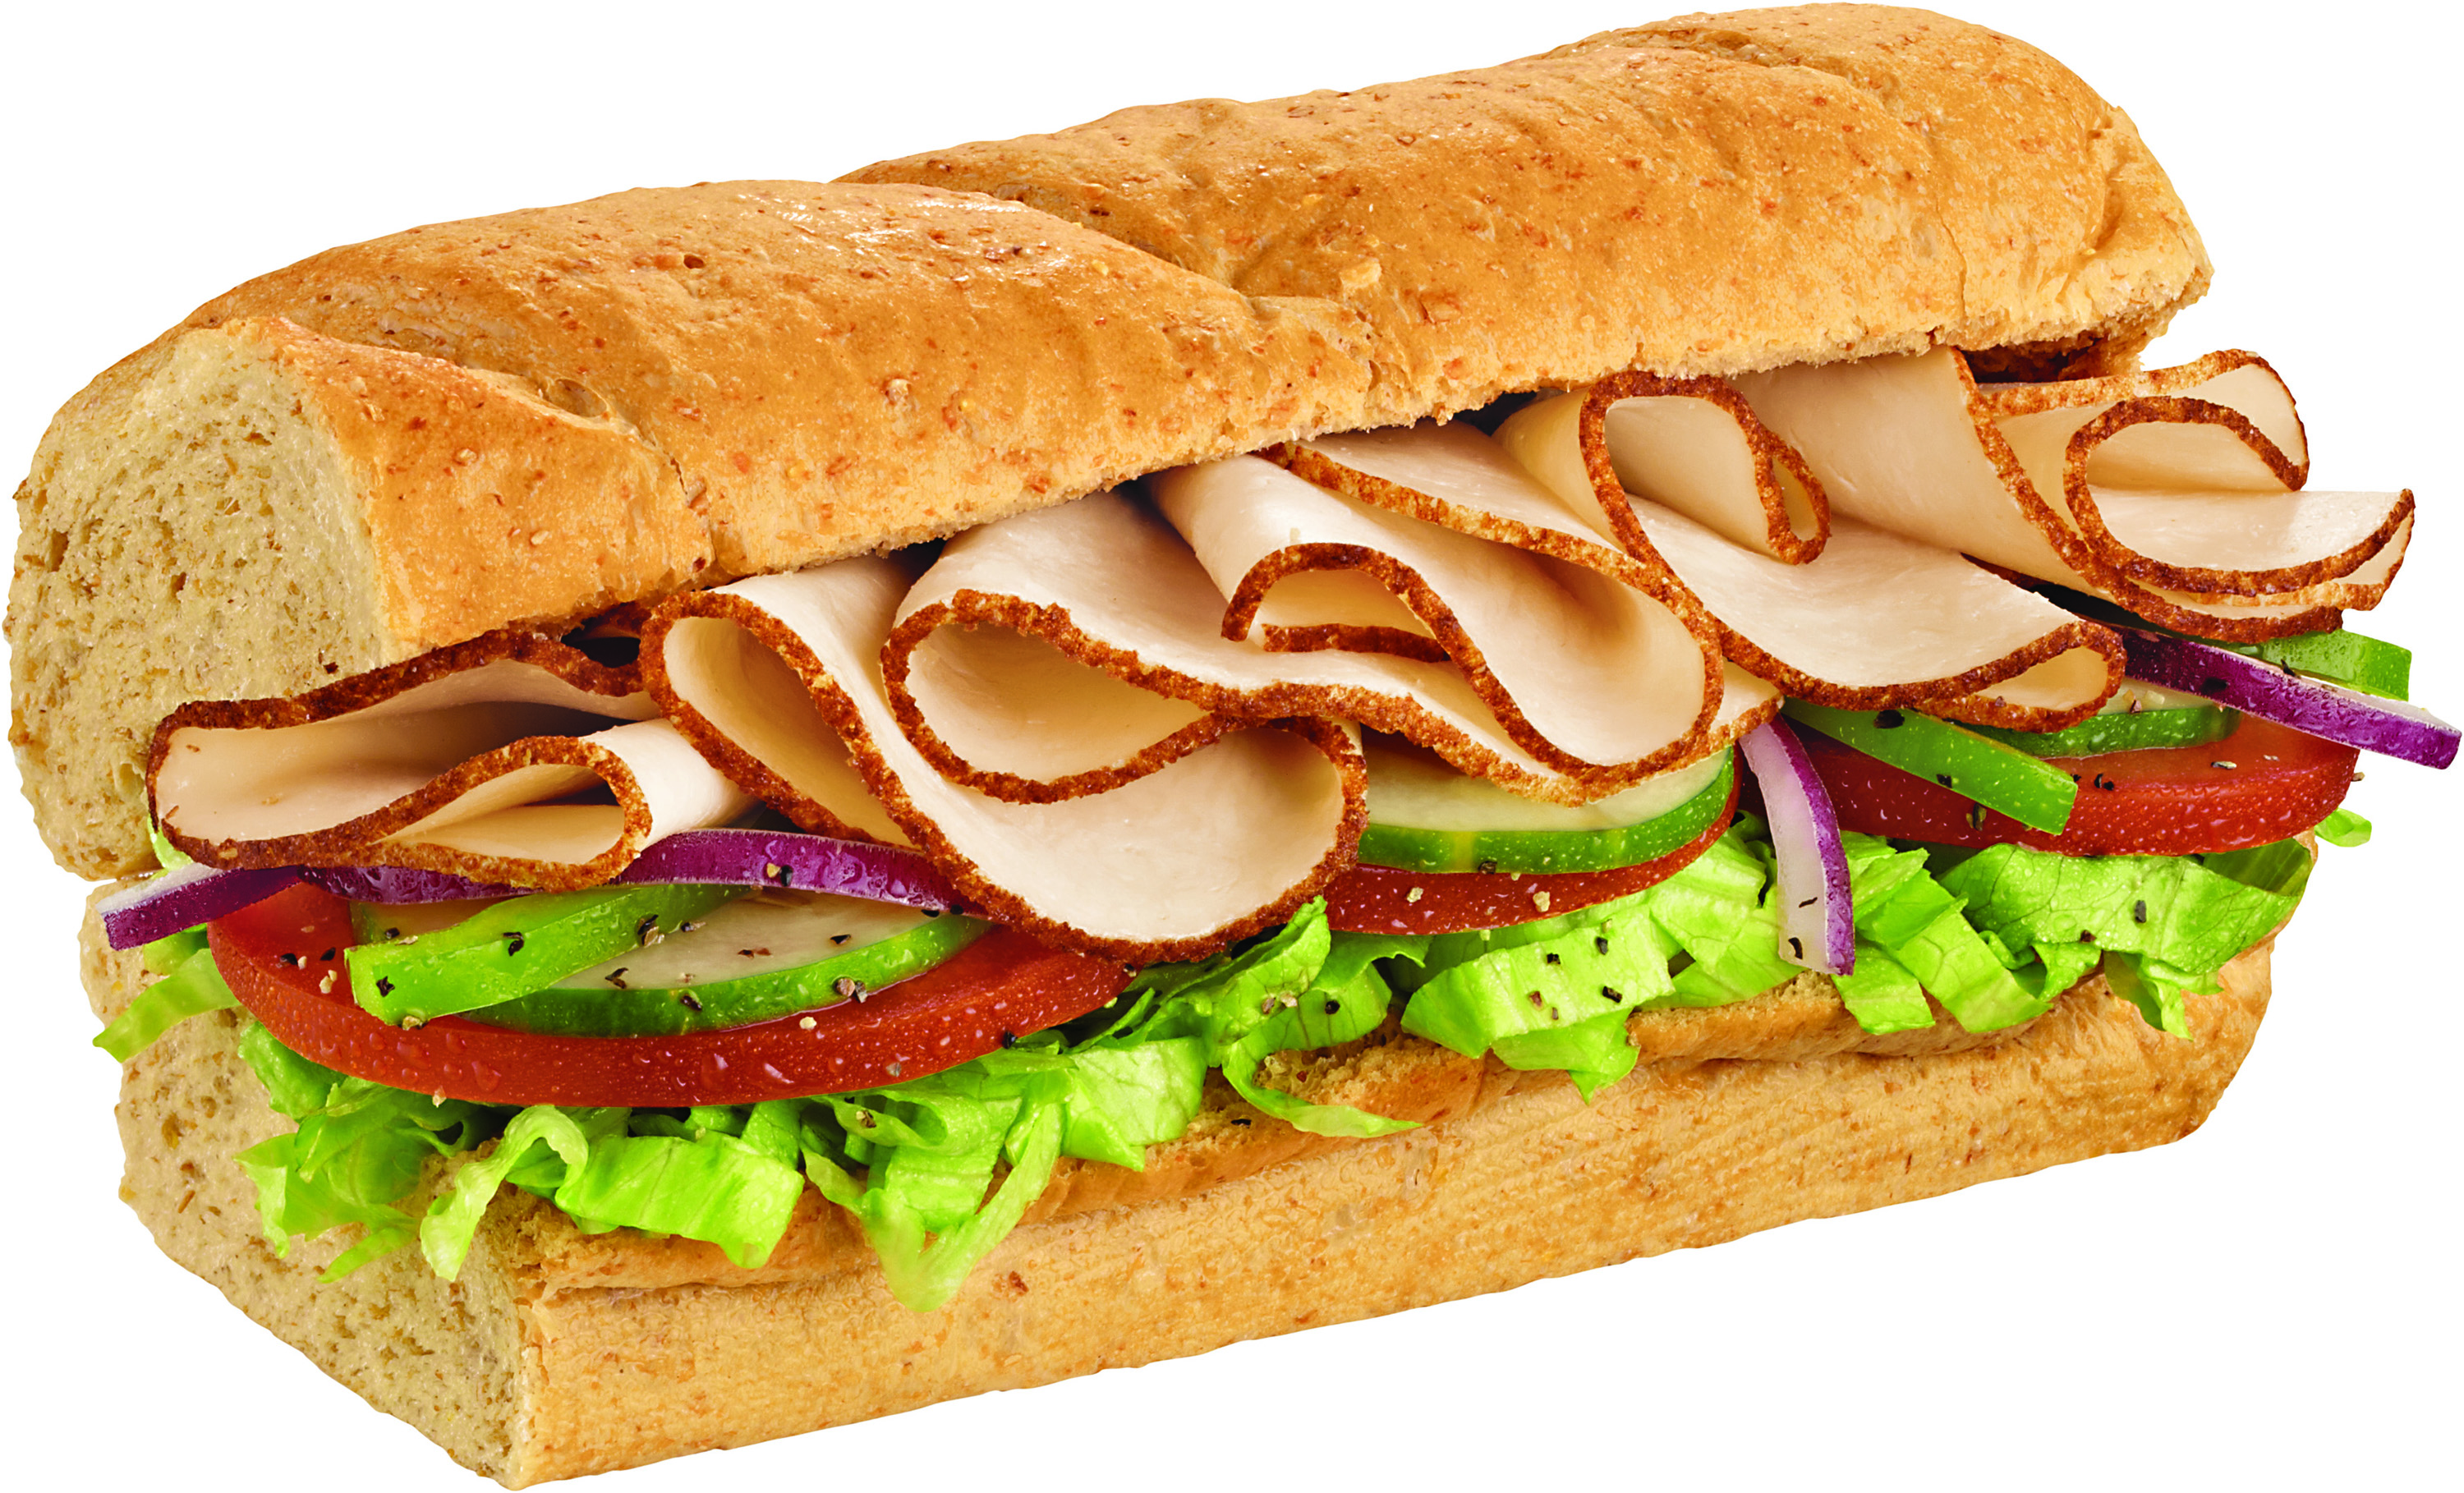 Subway - Turkey Sandwich WOut Cheese